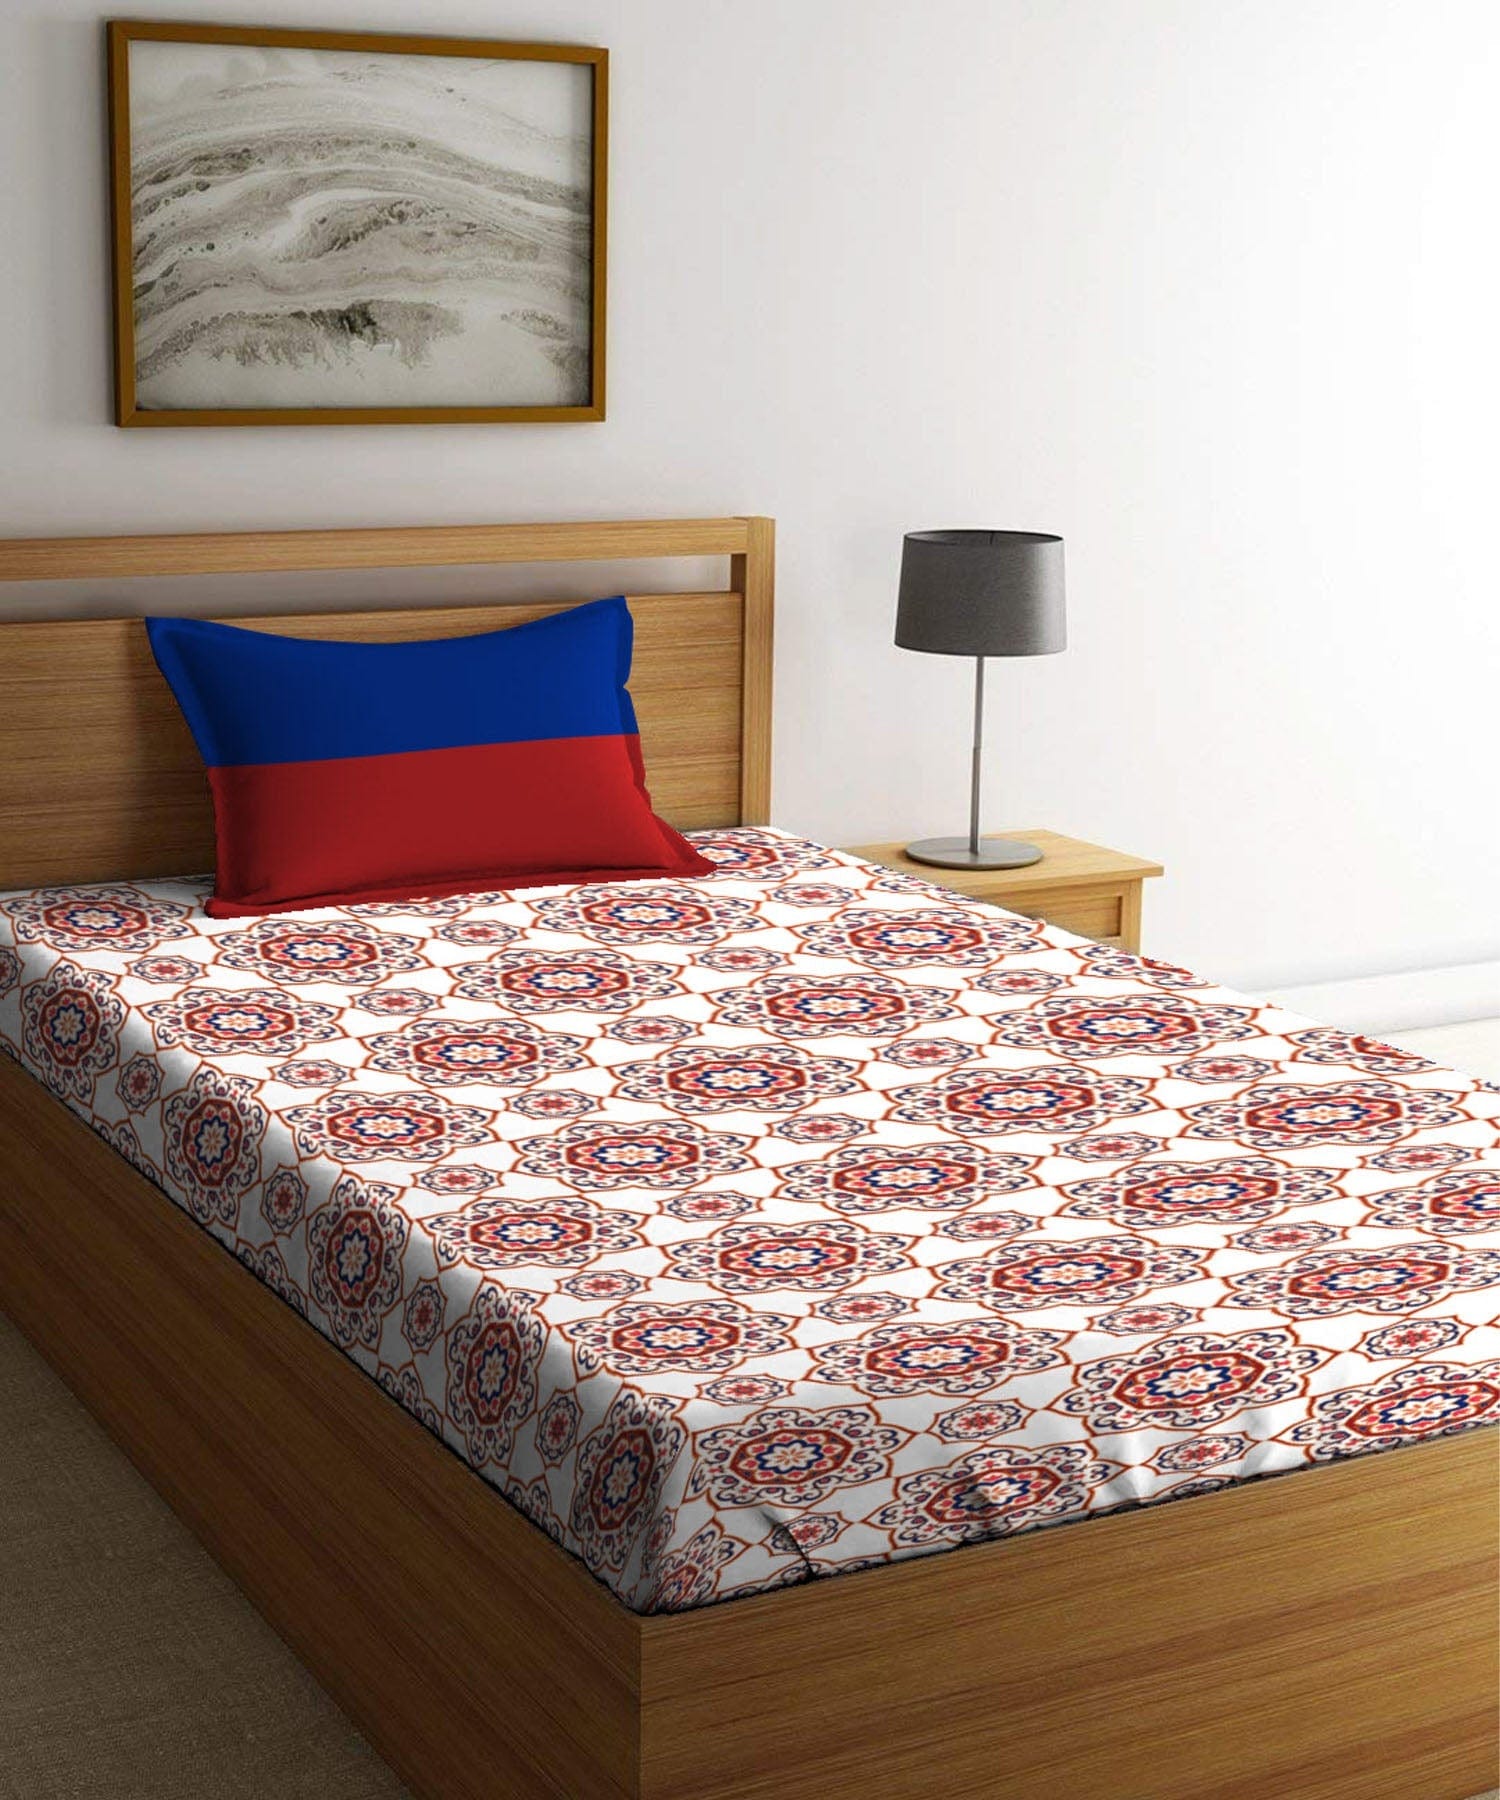 Single Bedsheet ₹899/-